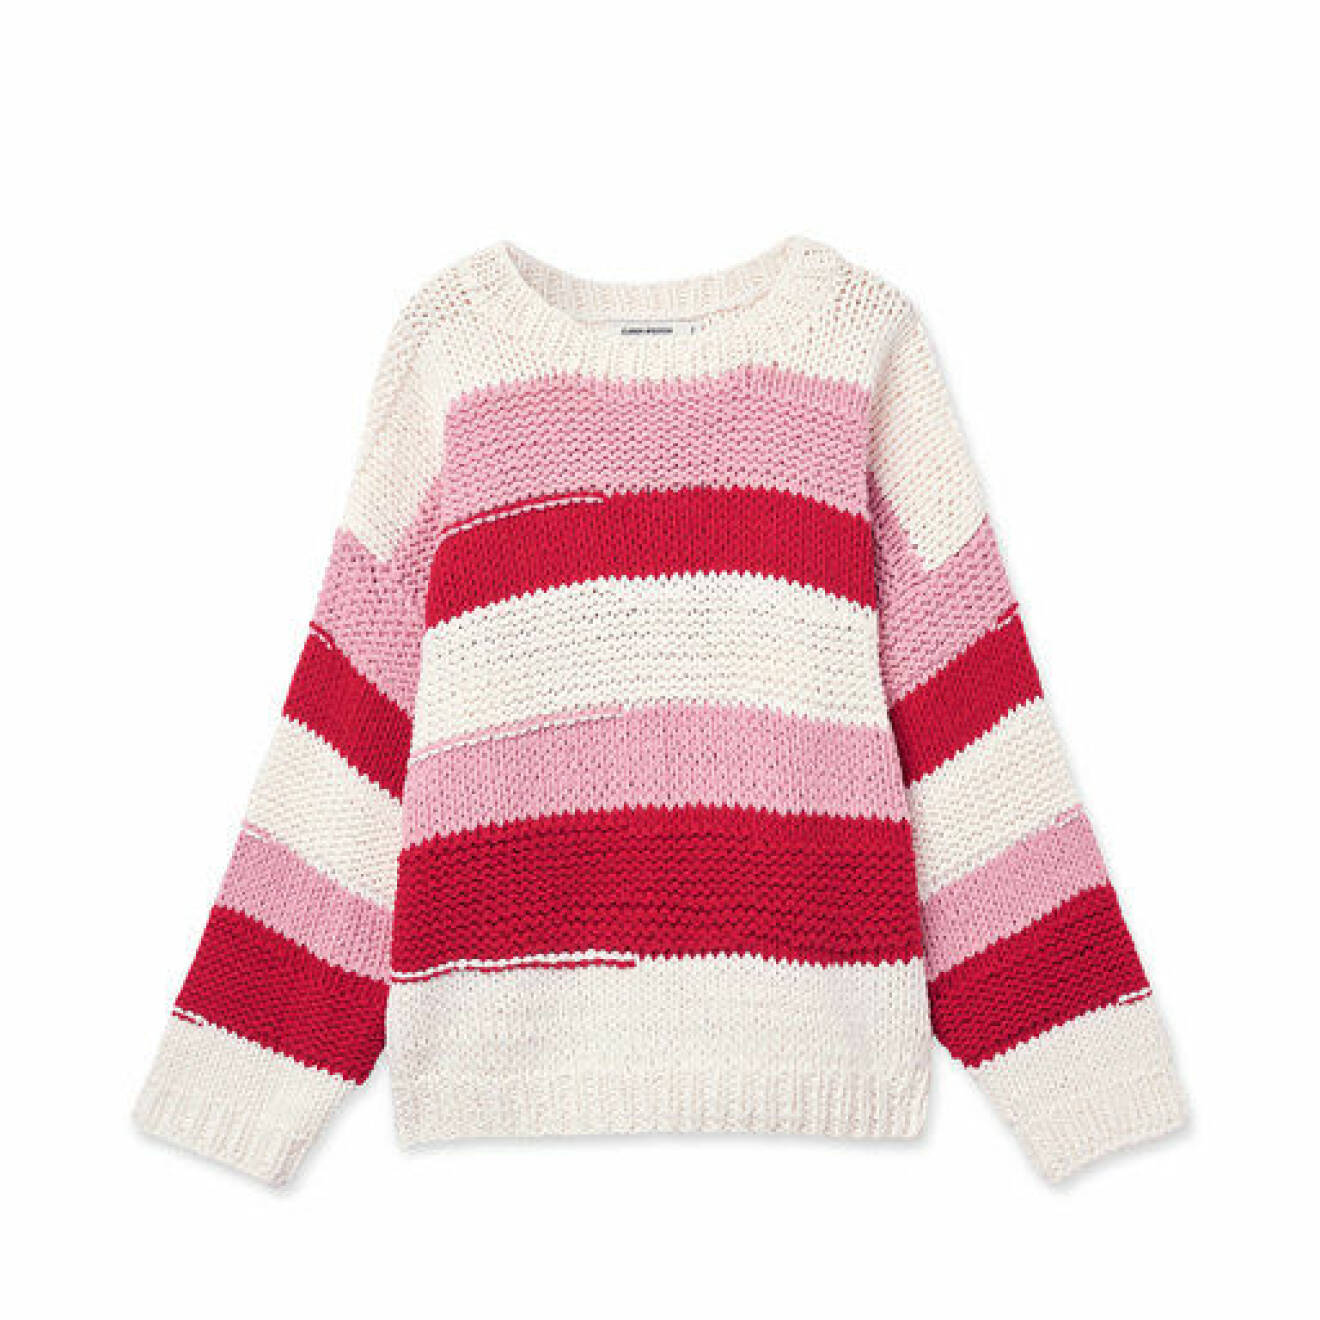 Stor stickad tröja med ränder i färgerna vit, rosa och röd från Soaked in Luxury. Här kan du shoppa den stickade tröjan!